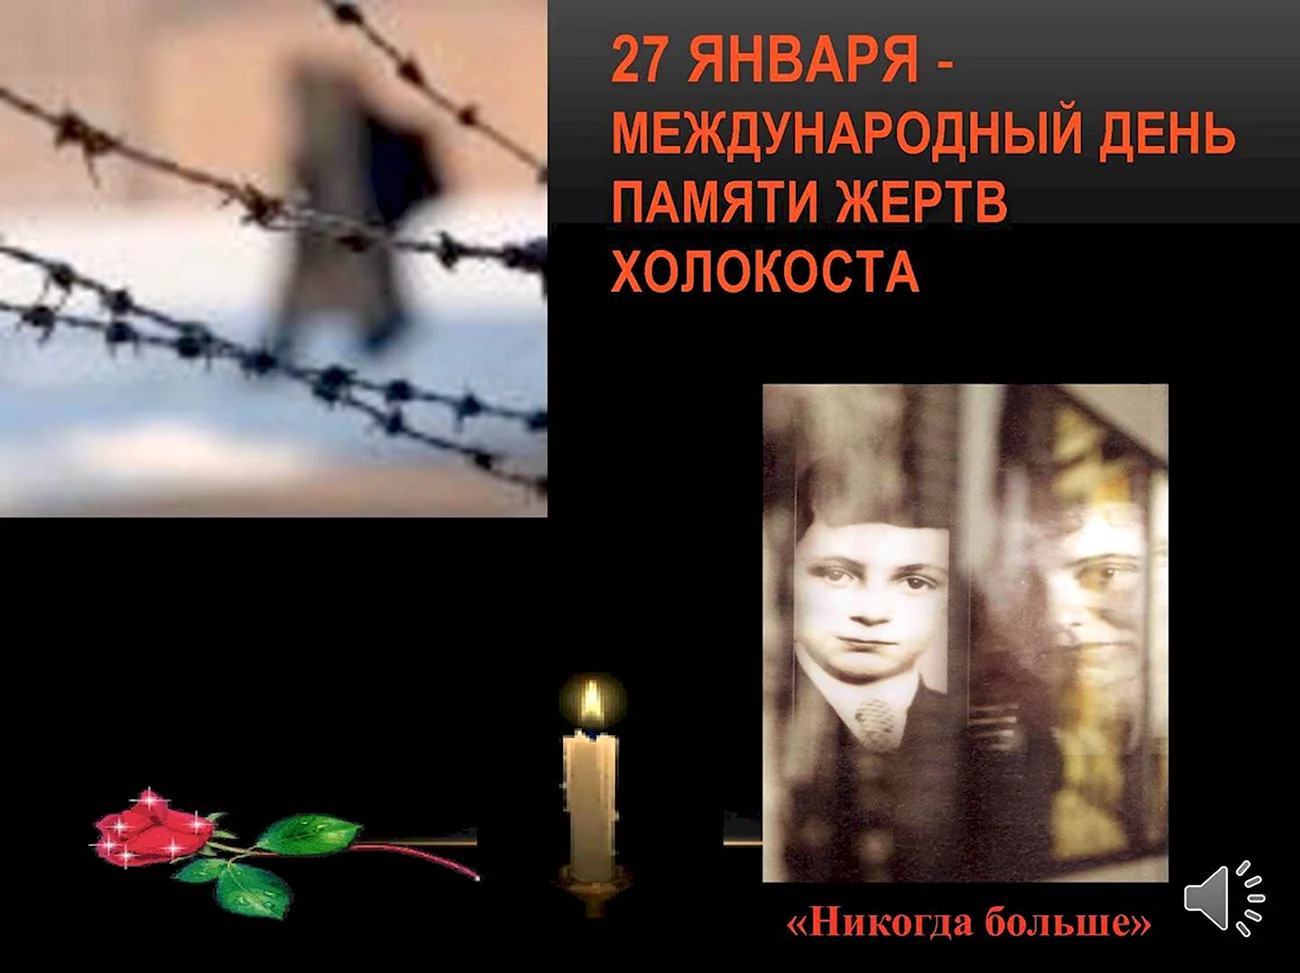 27 Января Международный день памяти жертв Холокоста. Поздравление